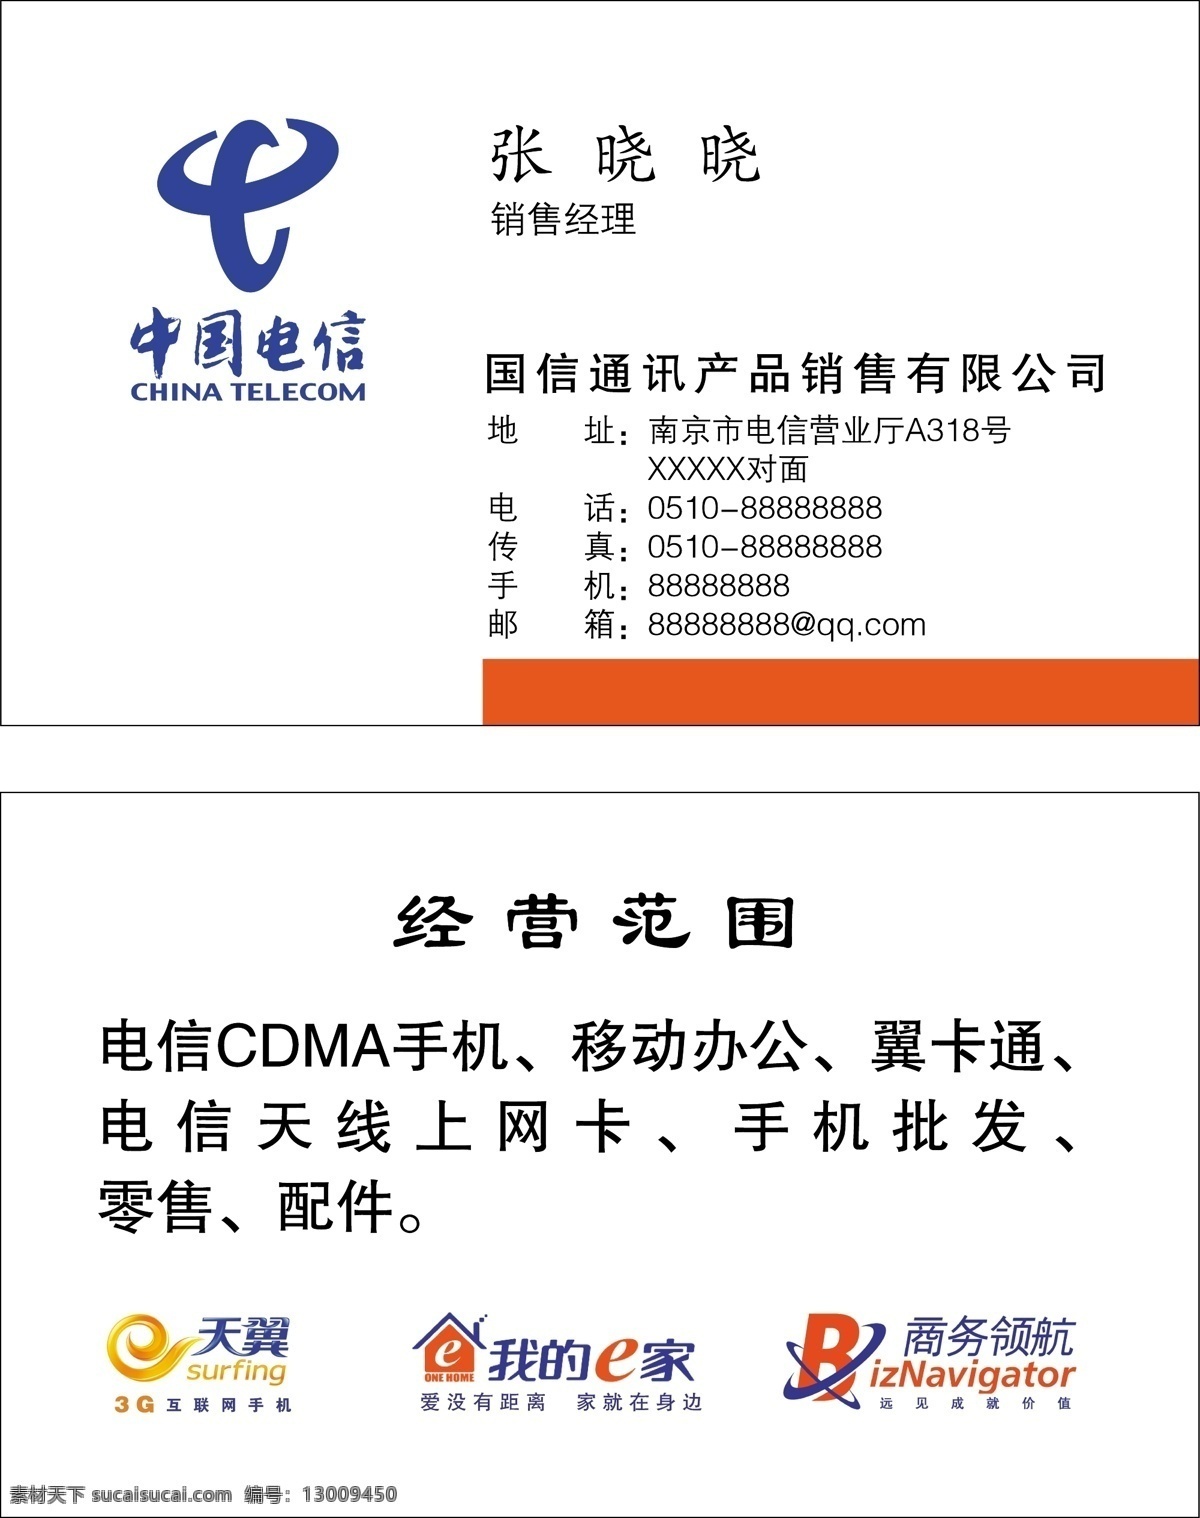 中国电信名片 中国电信标志 天翼标志 我的e家标志 商务领航标志 名片卡片 矢量